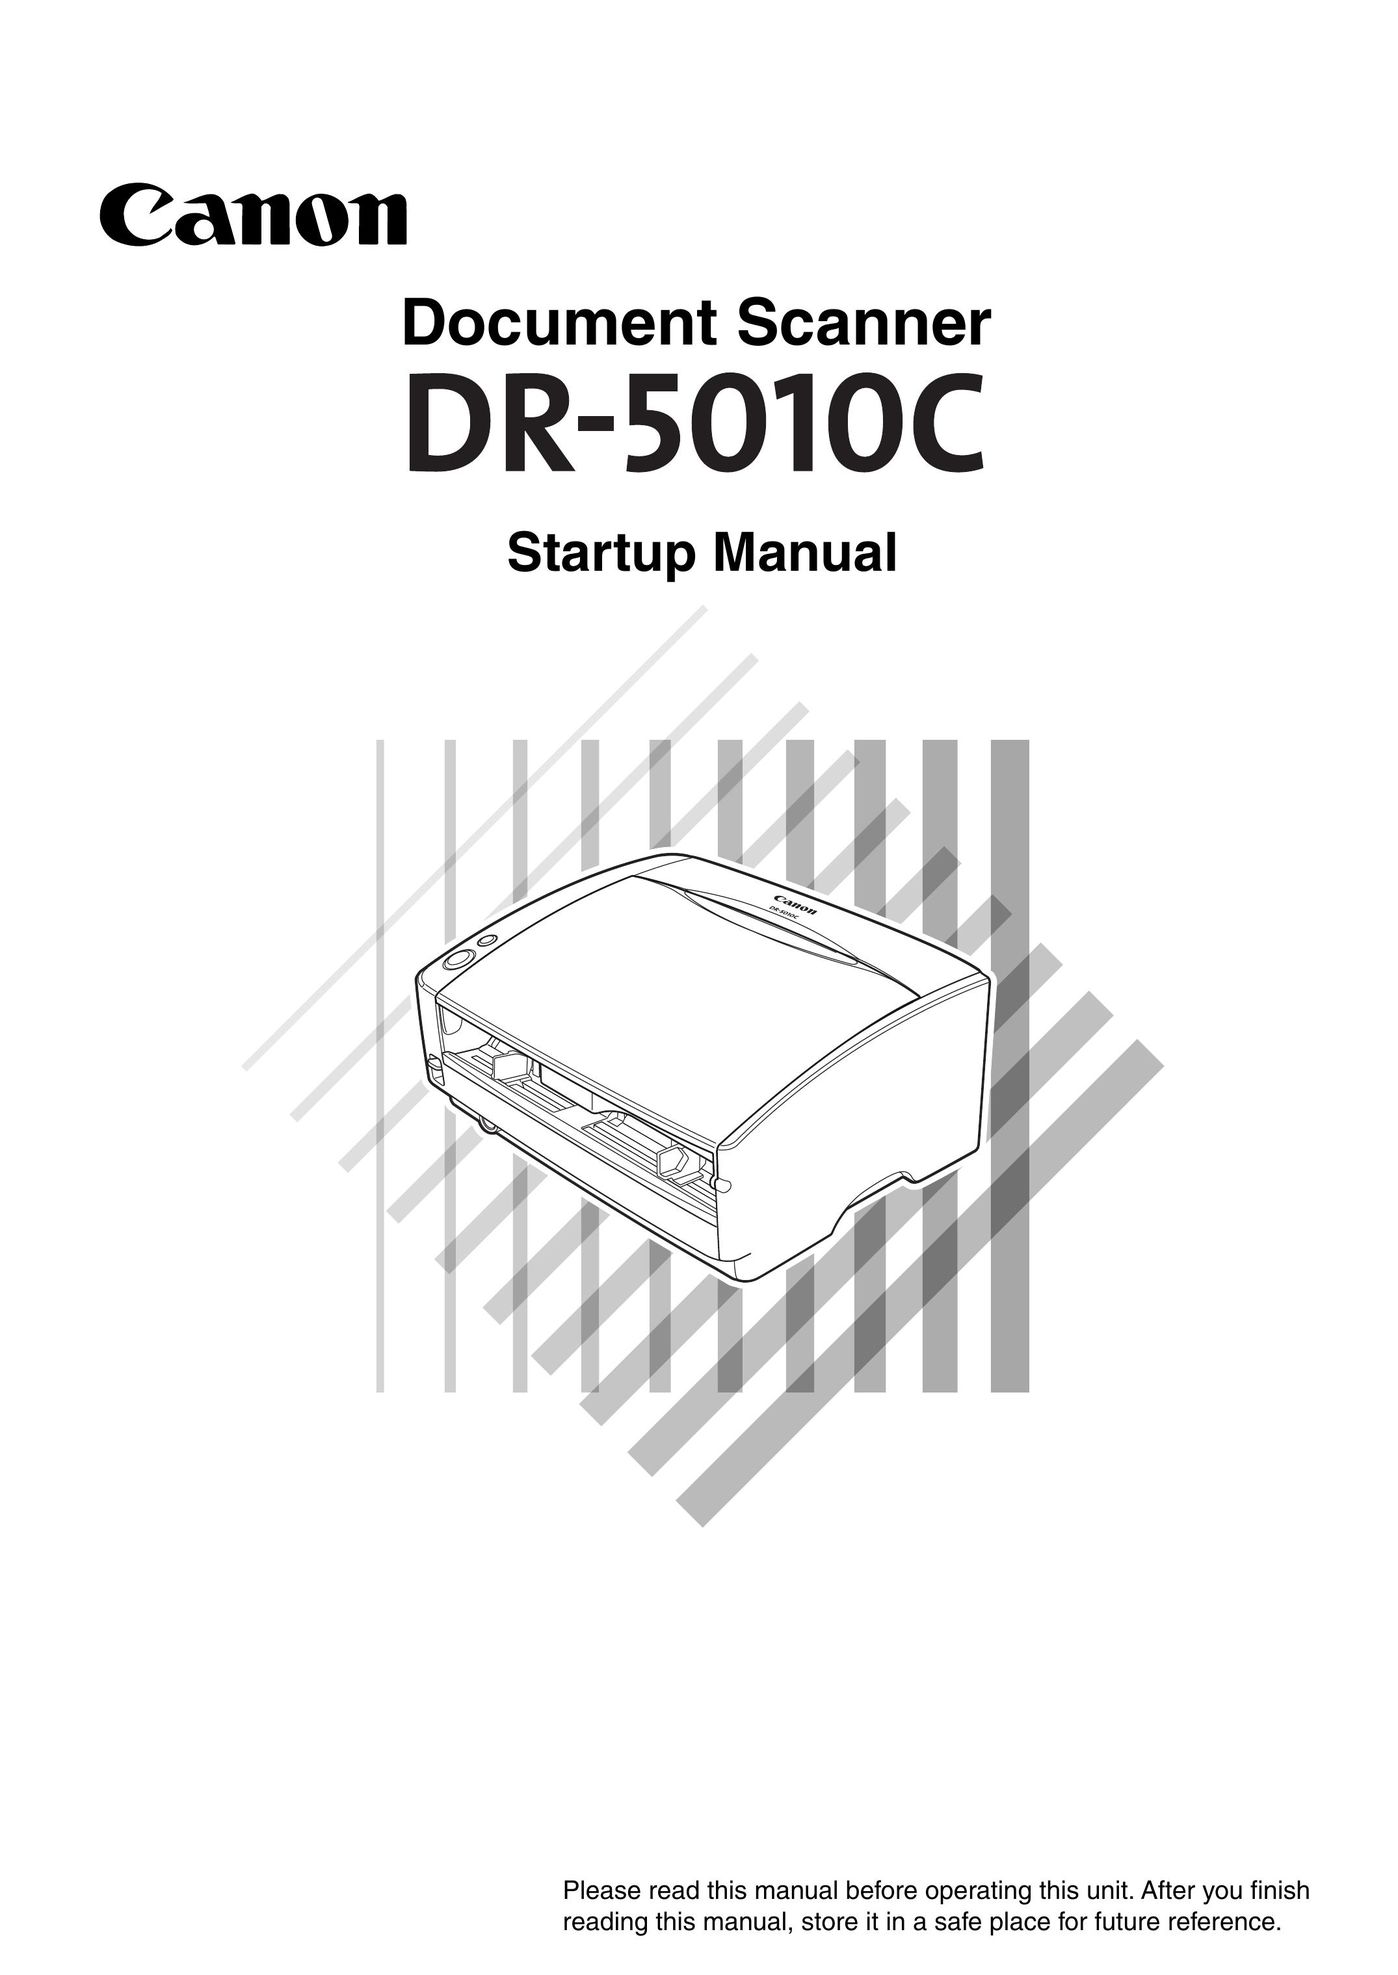 Delta DR-5010C Scanner User Manual